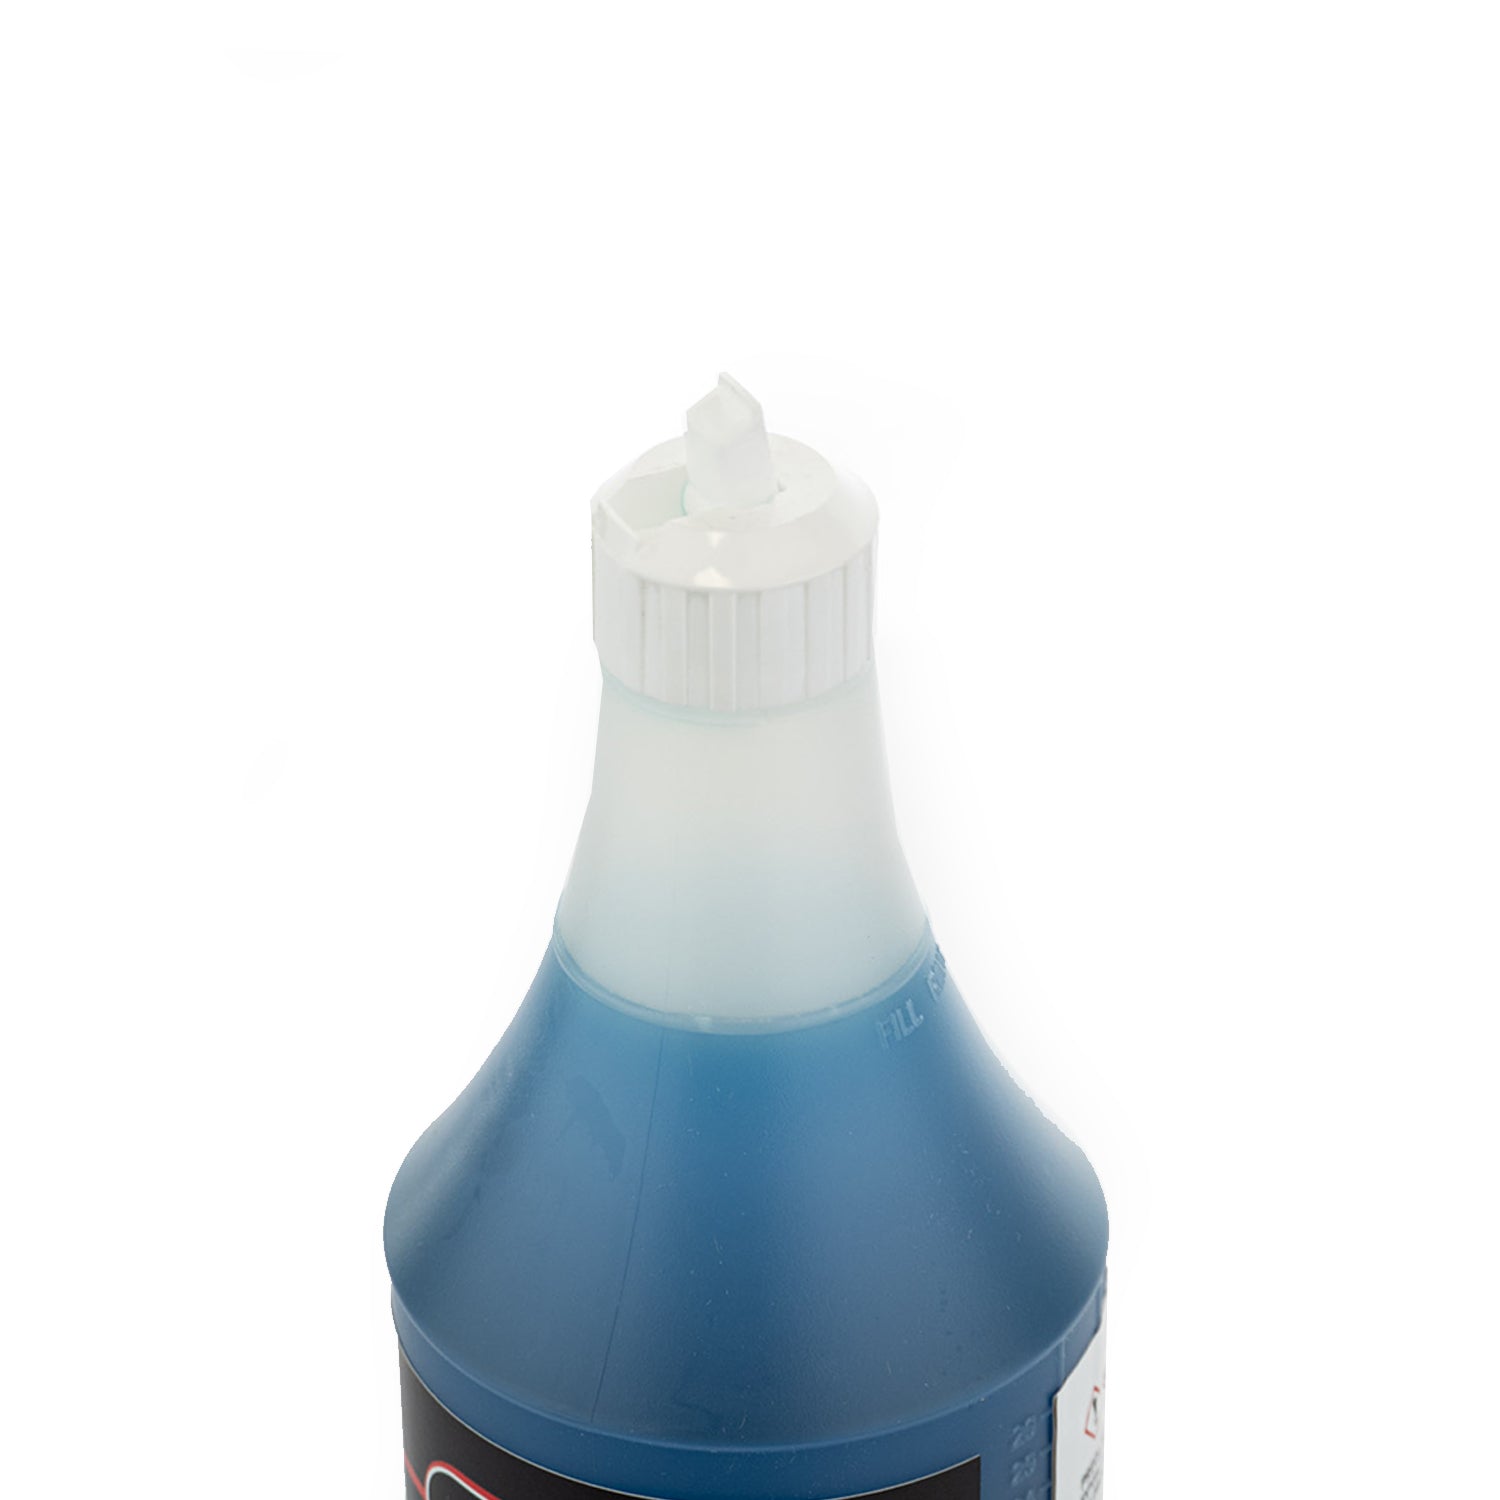 Stinger Chemical Ceramic Spray Sealant